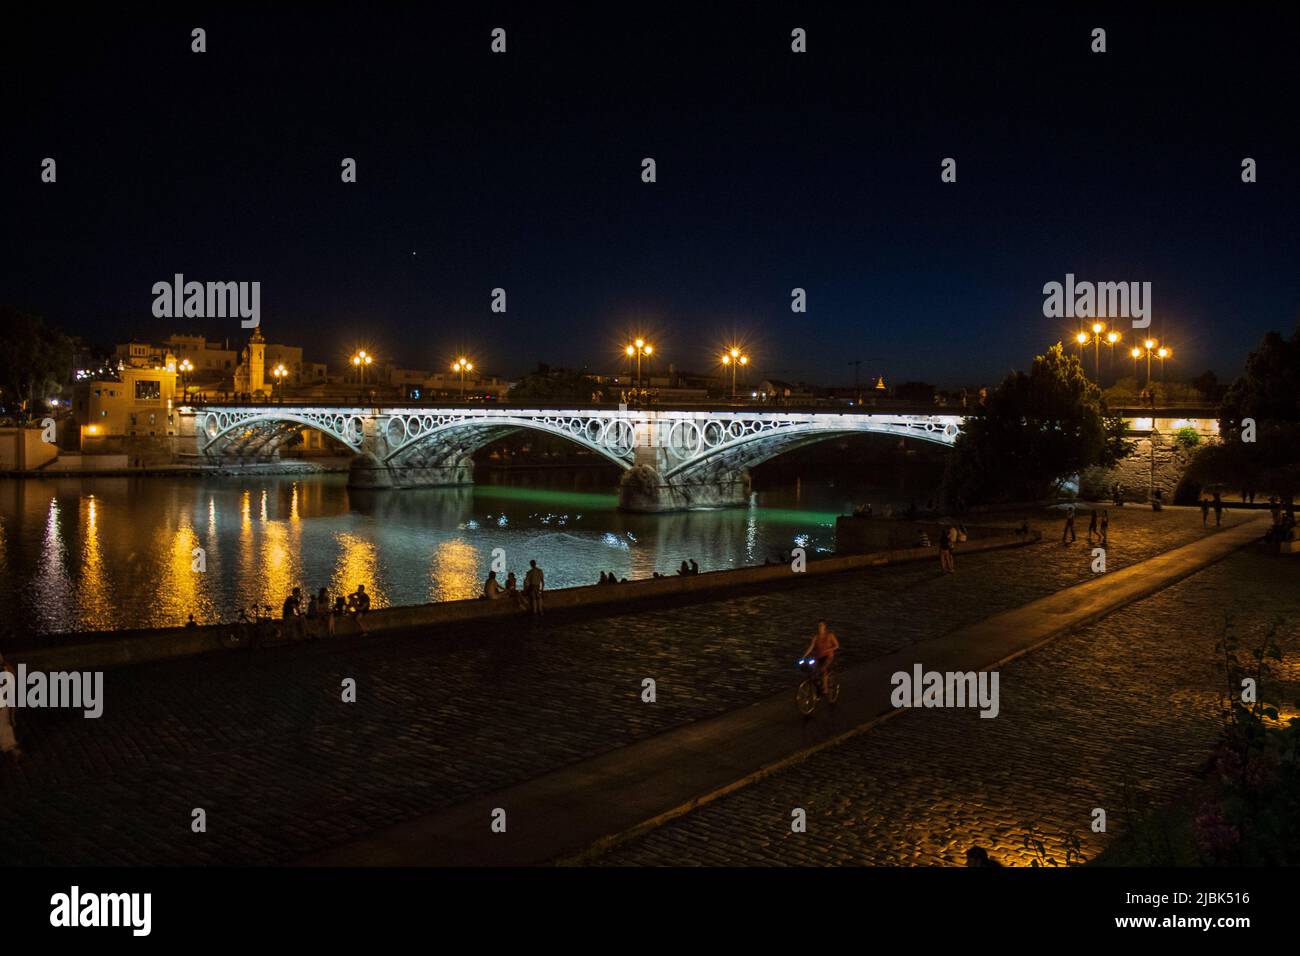 Fotografia del Puente de Triana en Sevilla, España. Stock Photo